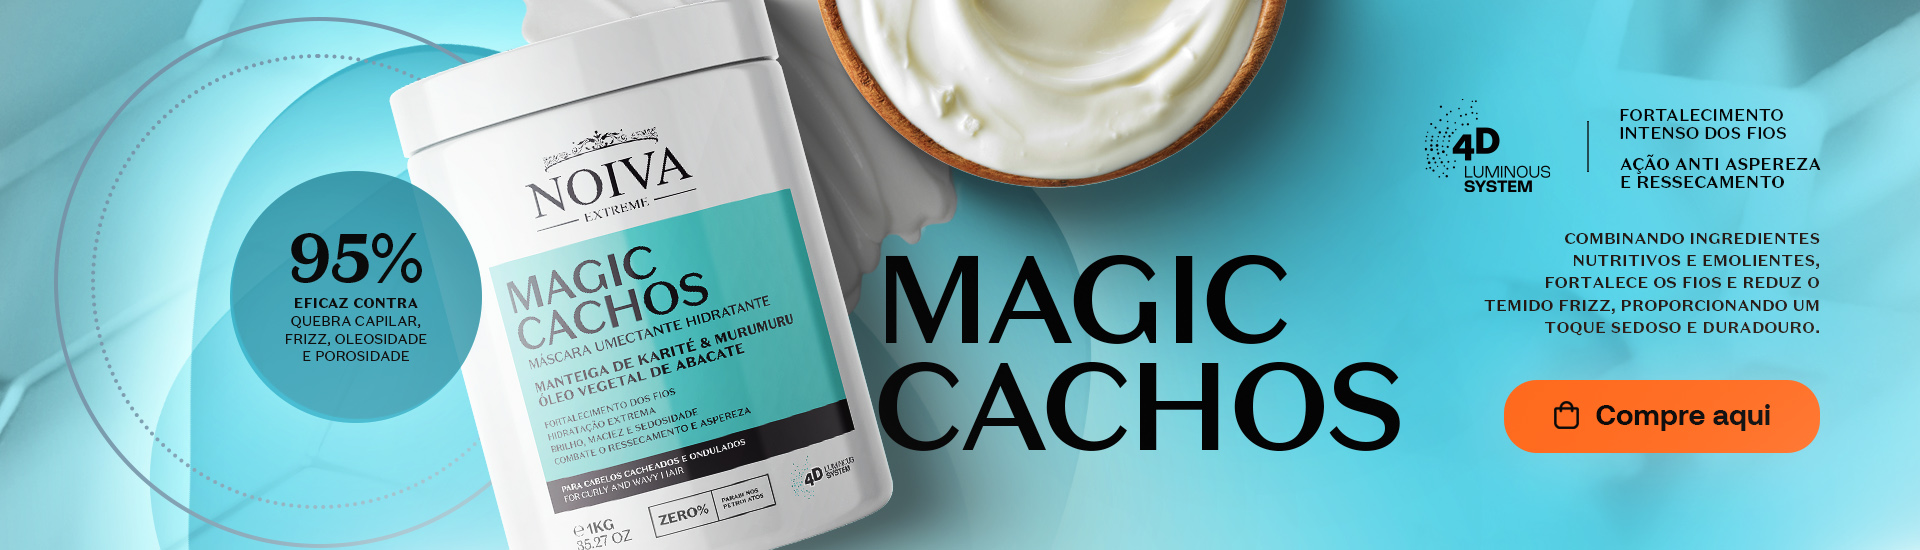 MAGIC CACHOS - 1KG